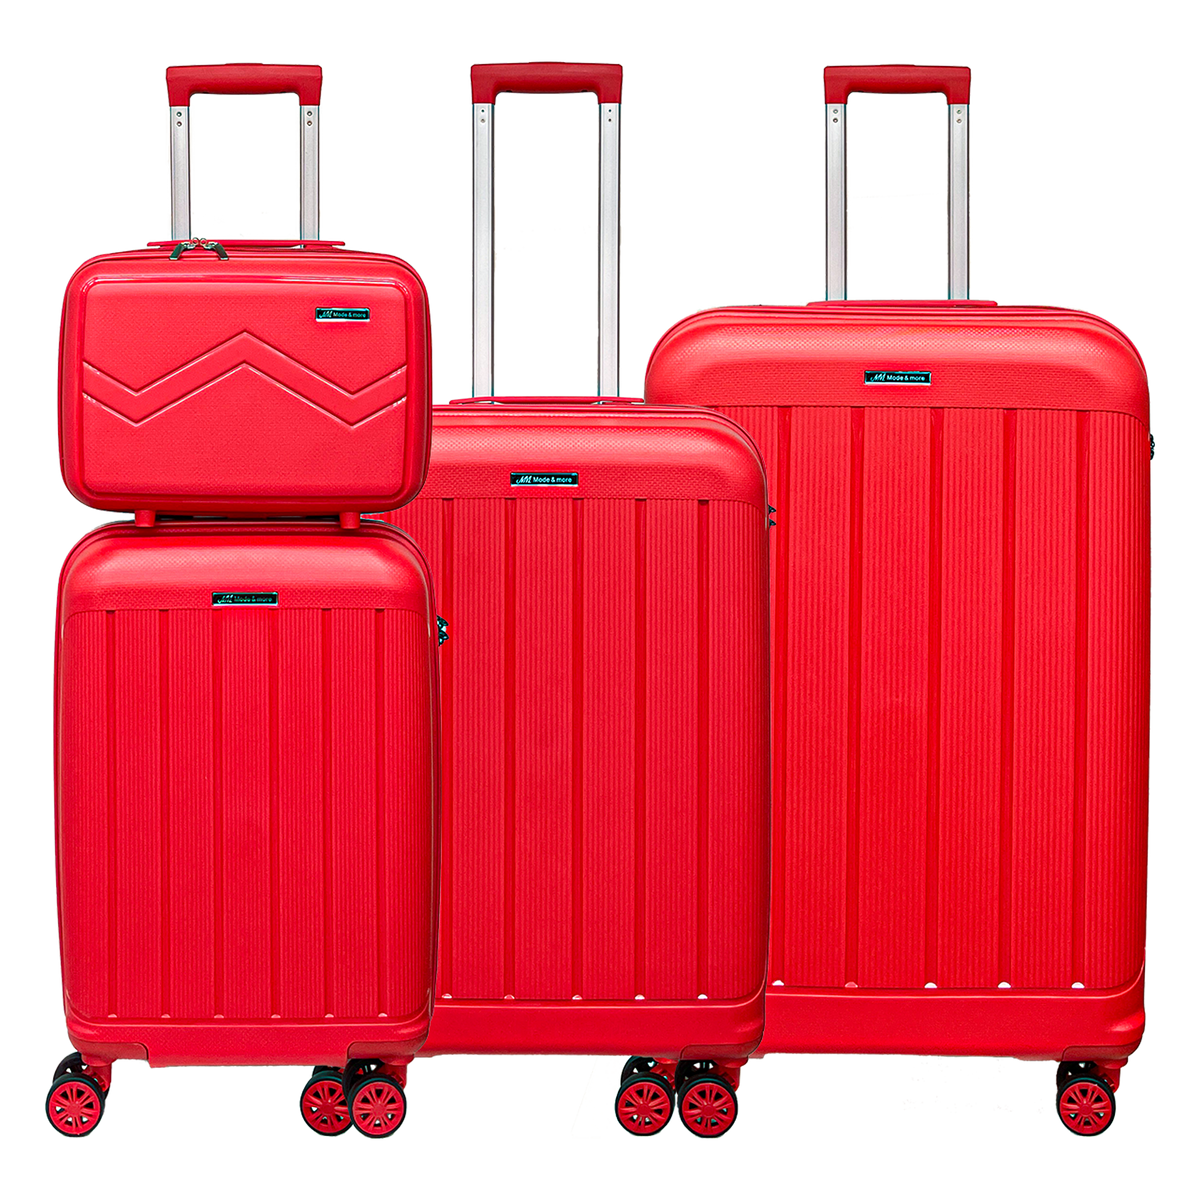 Sada 4 kusů měkkých polipropylenových kufrů s TSA zámkem. Vysoká kvalita a extrémně lehký trolley s kosmetickým kufrem